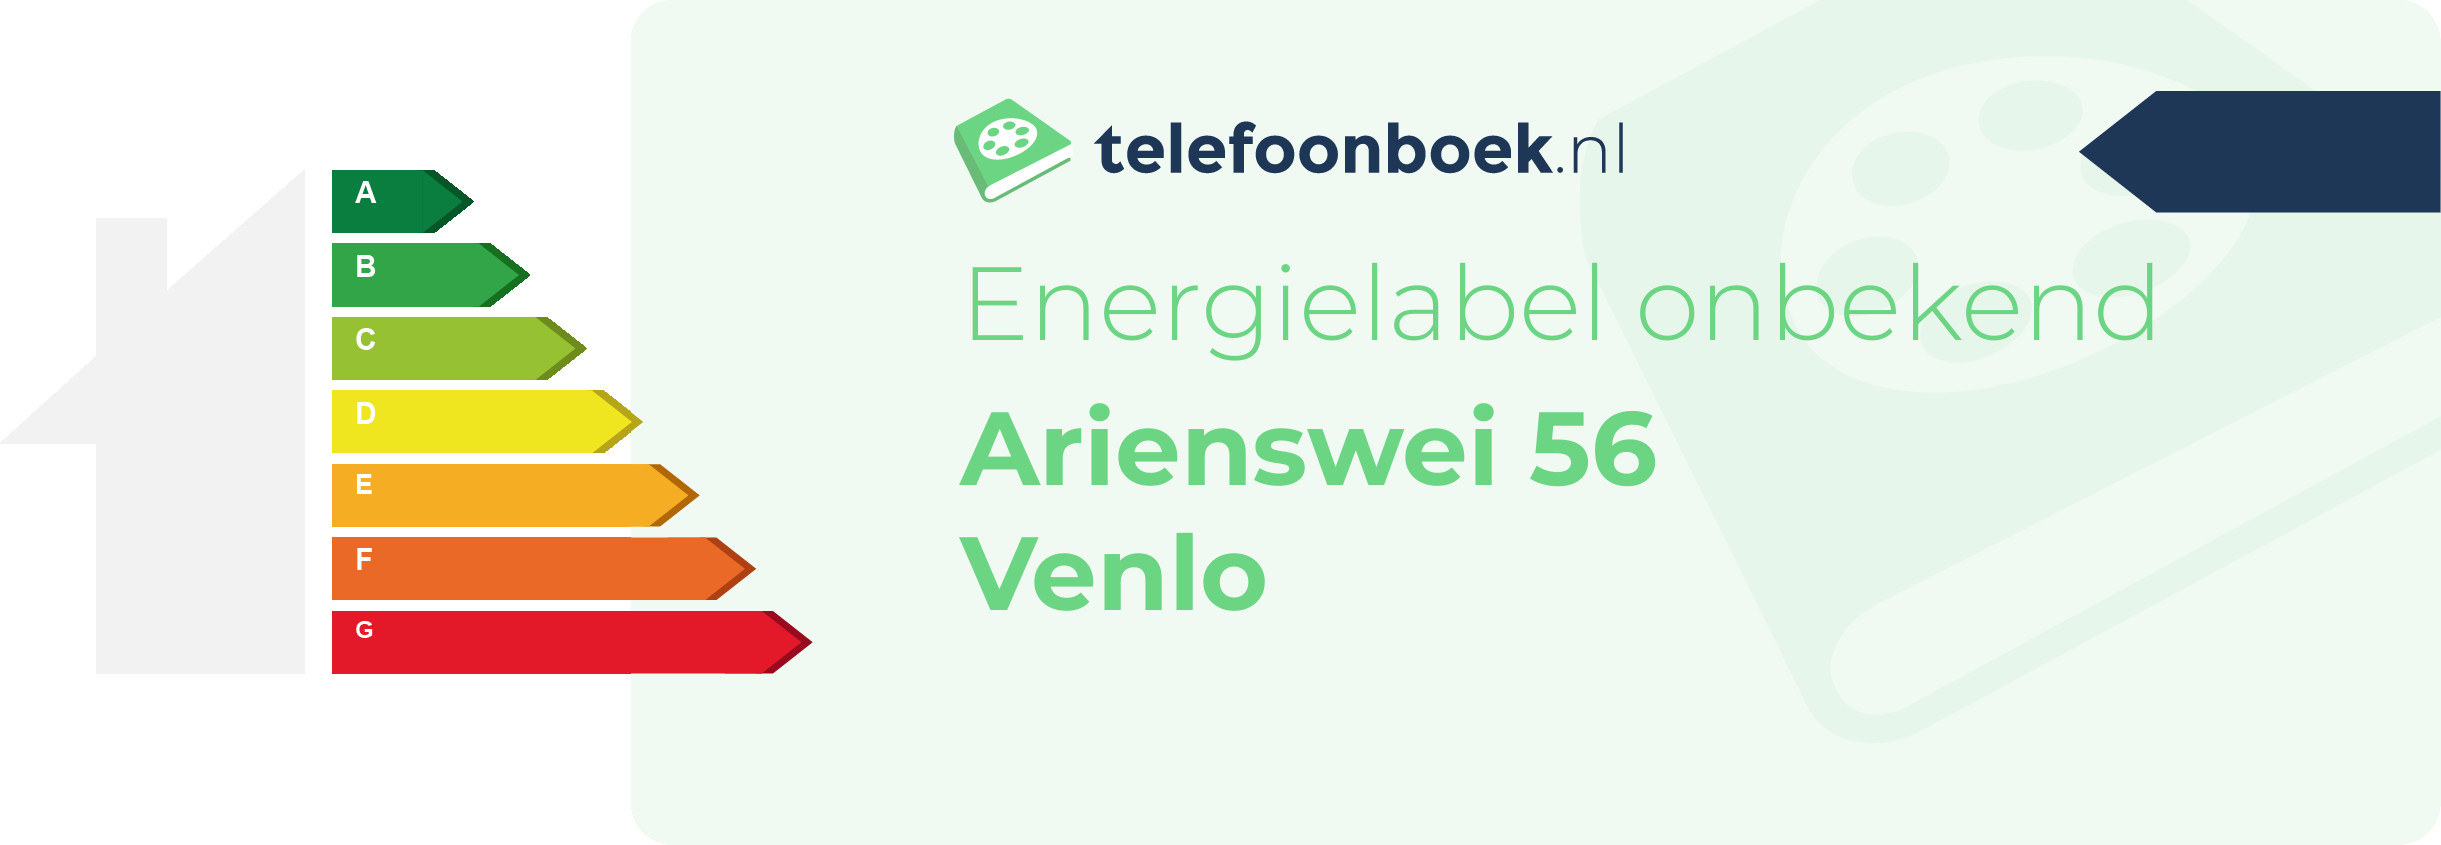 Energielabel Arienswei 56 Venlo